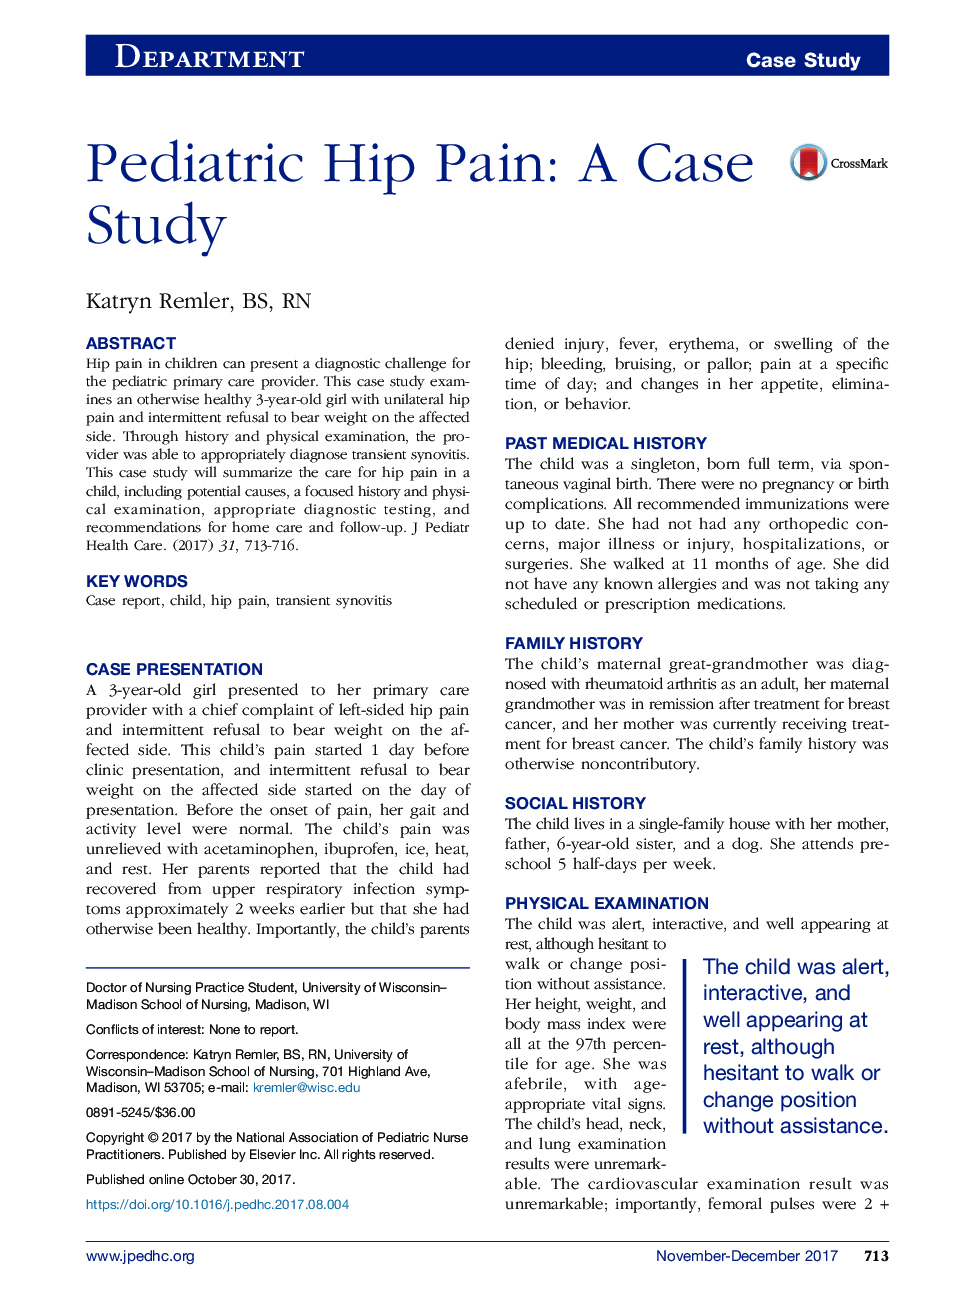 درد مفصل ران کودکان: مطالعه موردی 